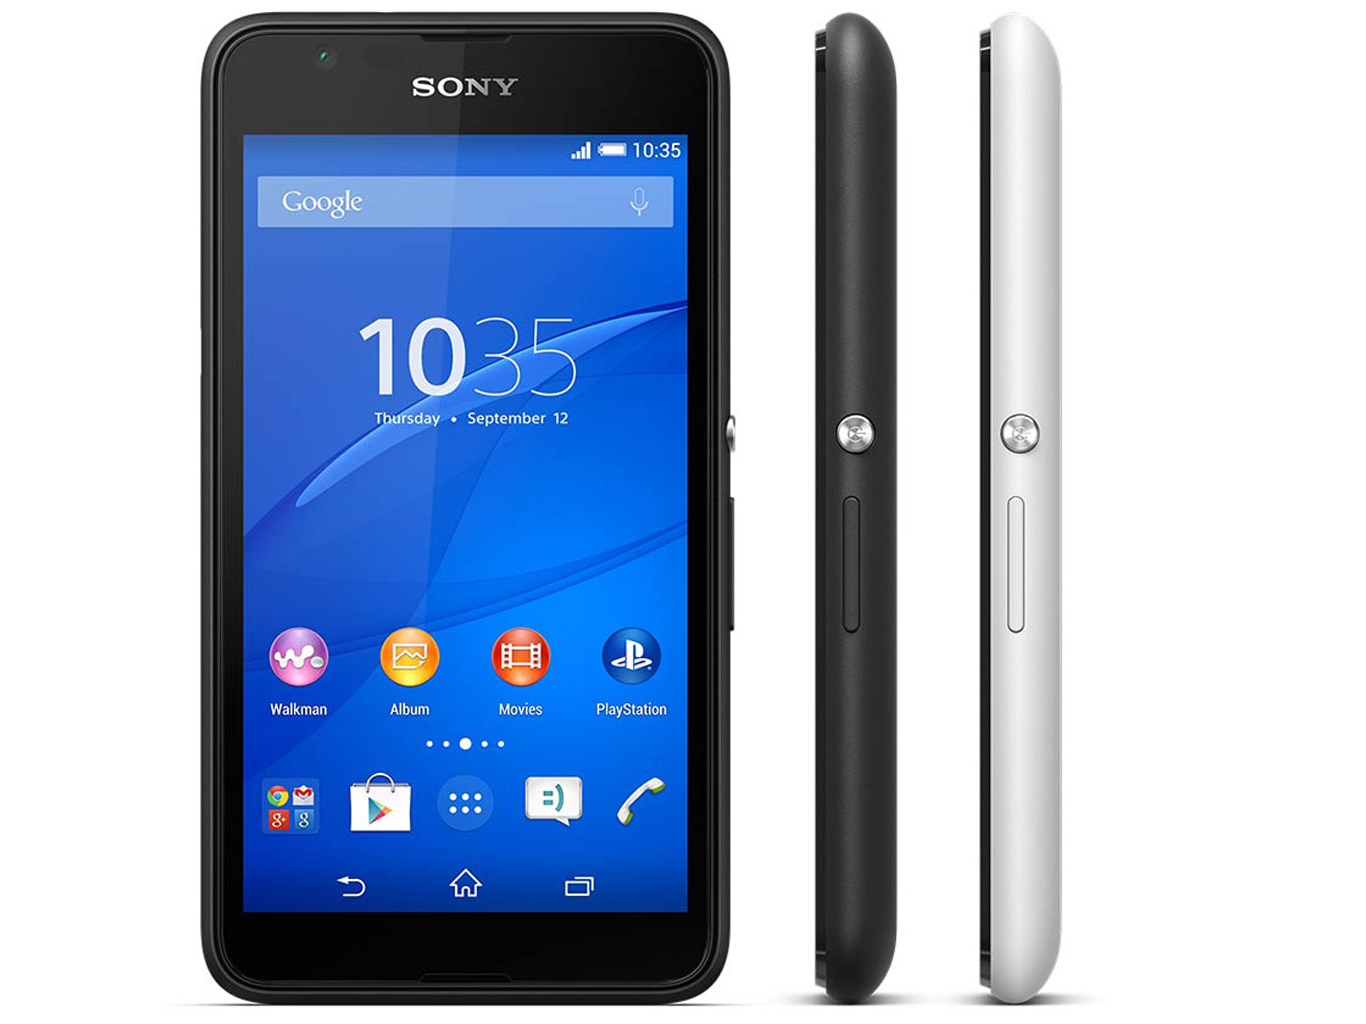 Nevelig Comorama schaduw Sony Xperia E4g Smartphone Review - NotebookCheck.net Reviews